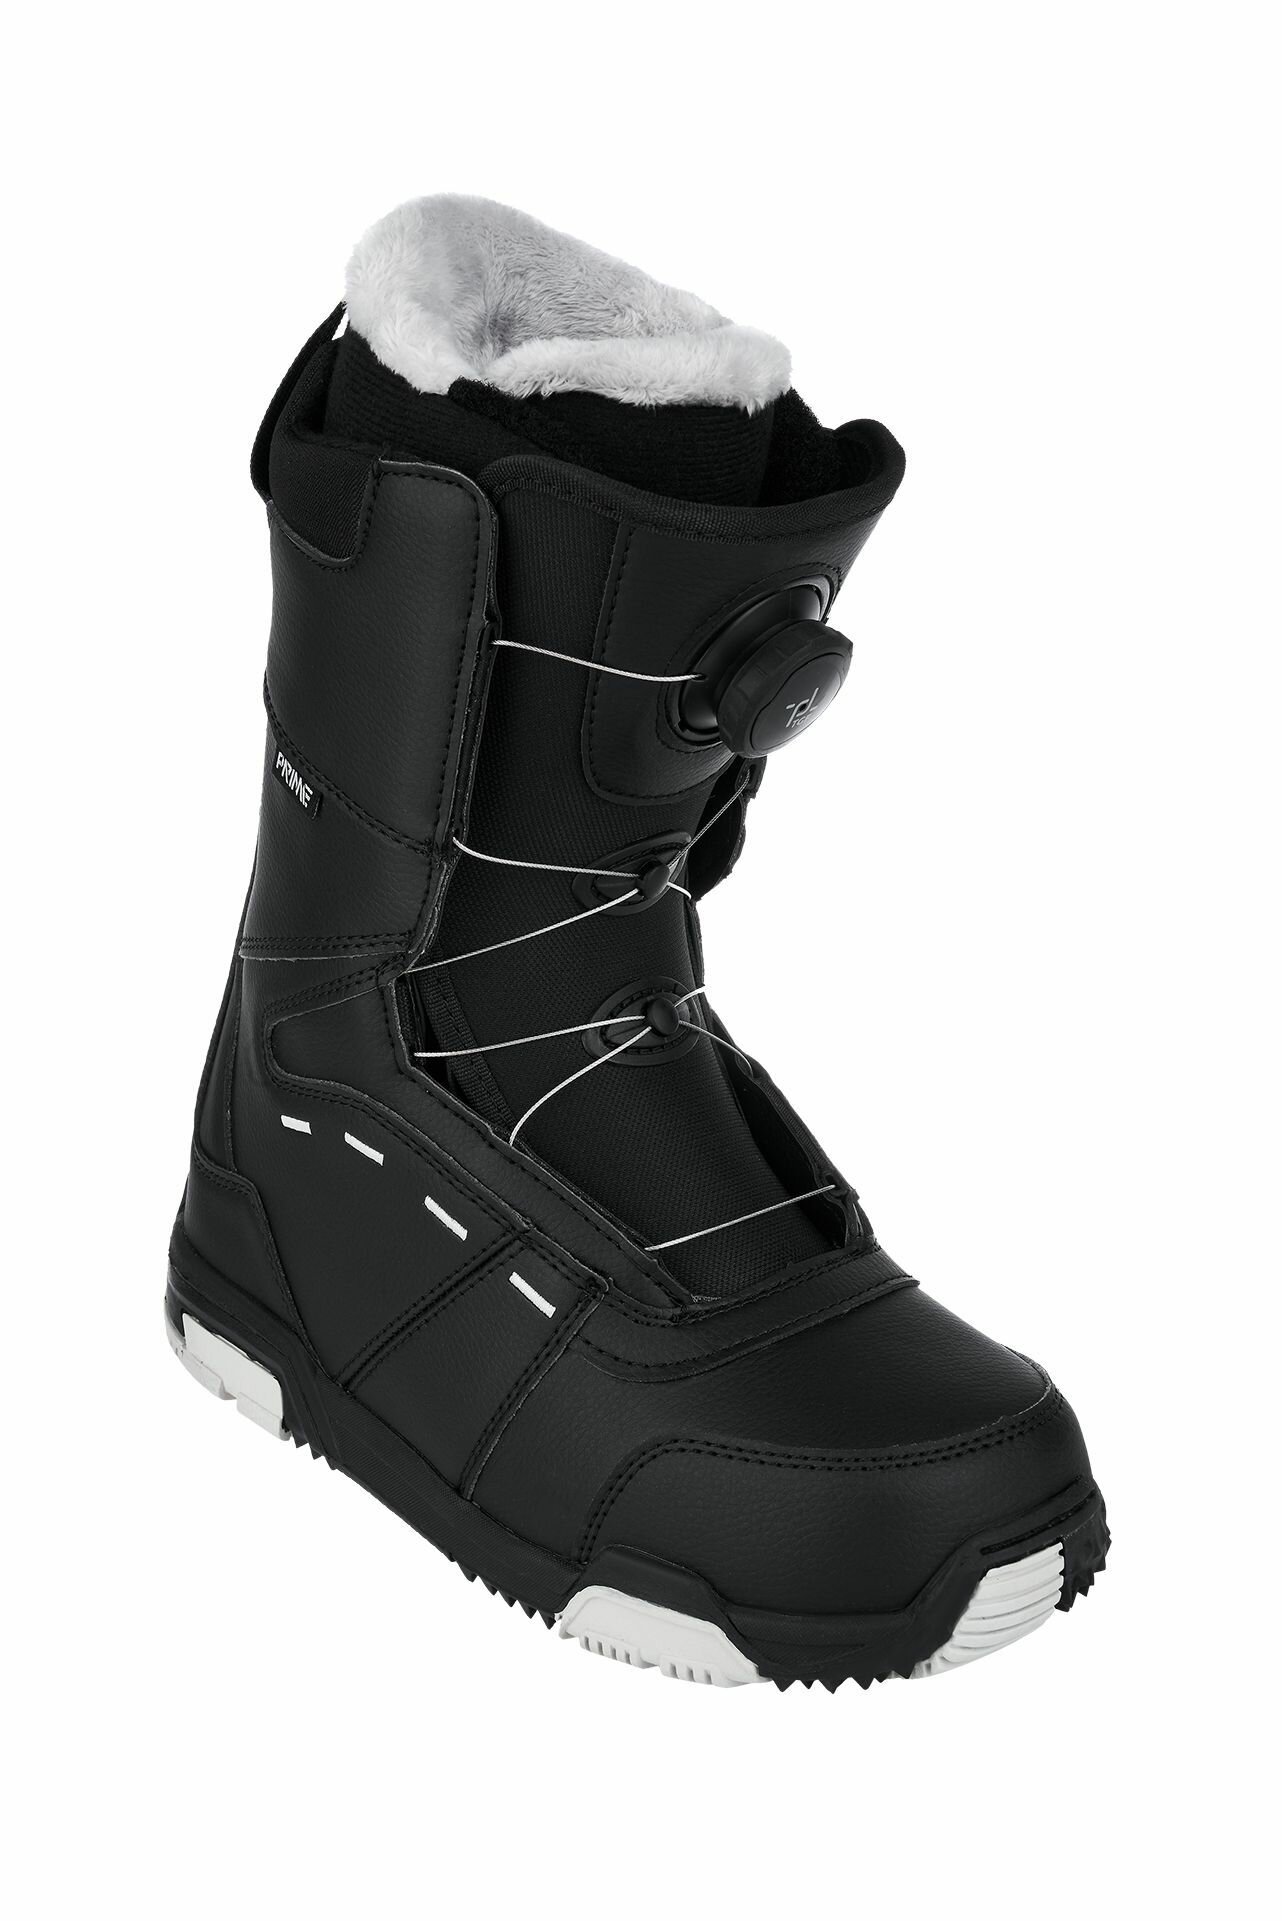 Ботинки сноубордические PRIME COOL-C1 TGF Black (быстрая шнуровка) (40 RU / 26,5 cm)